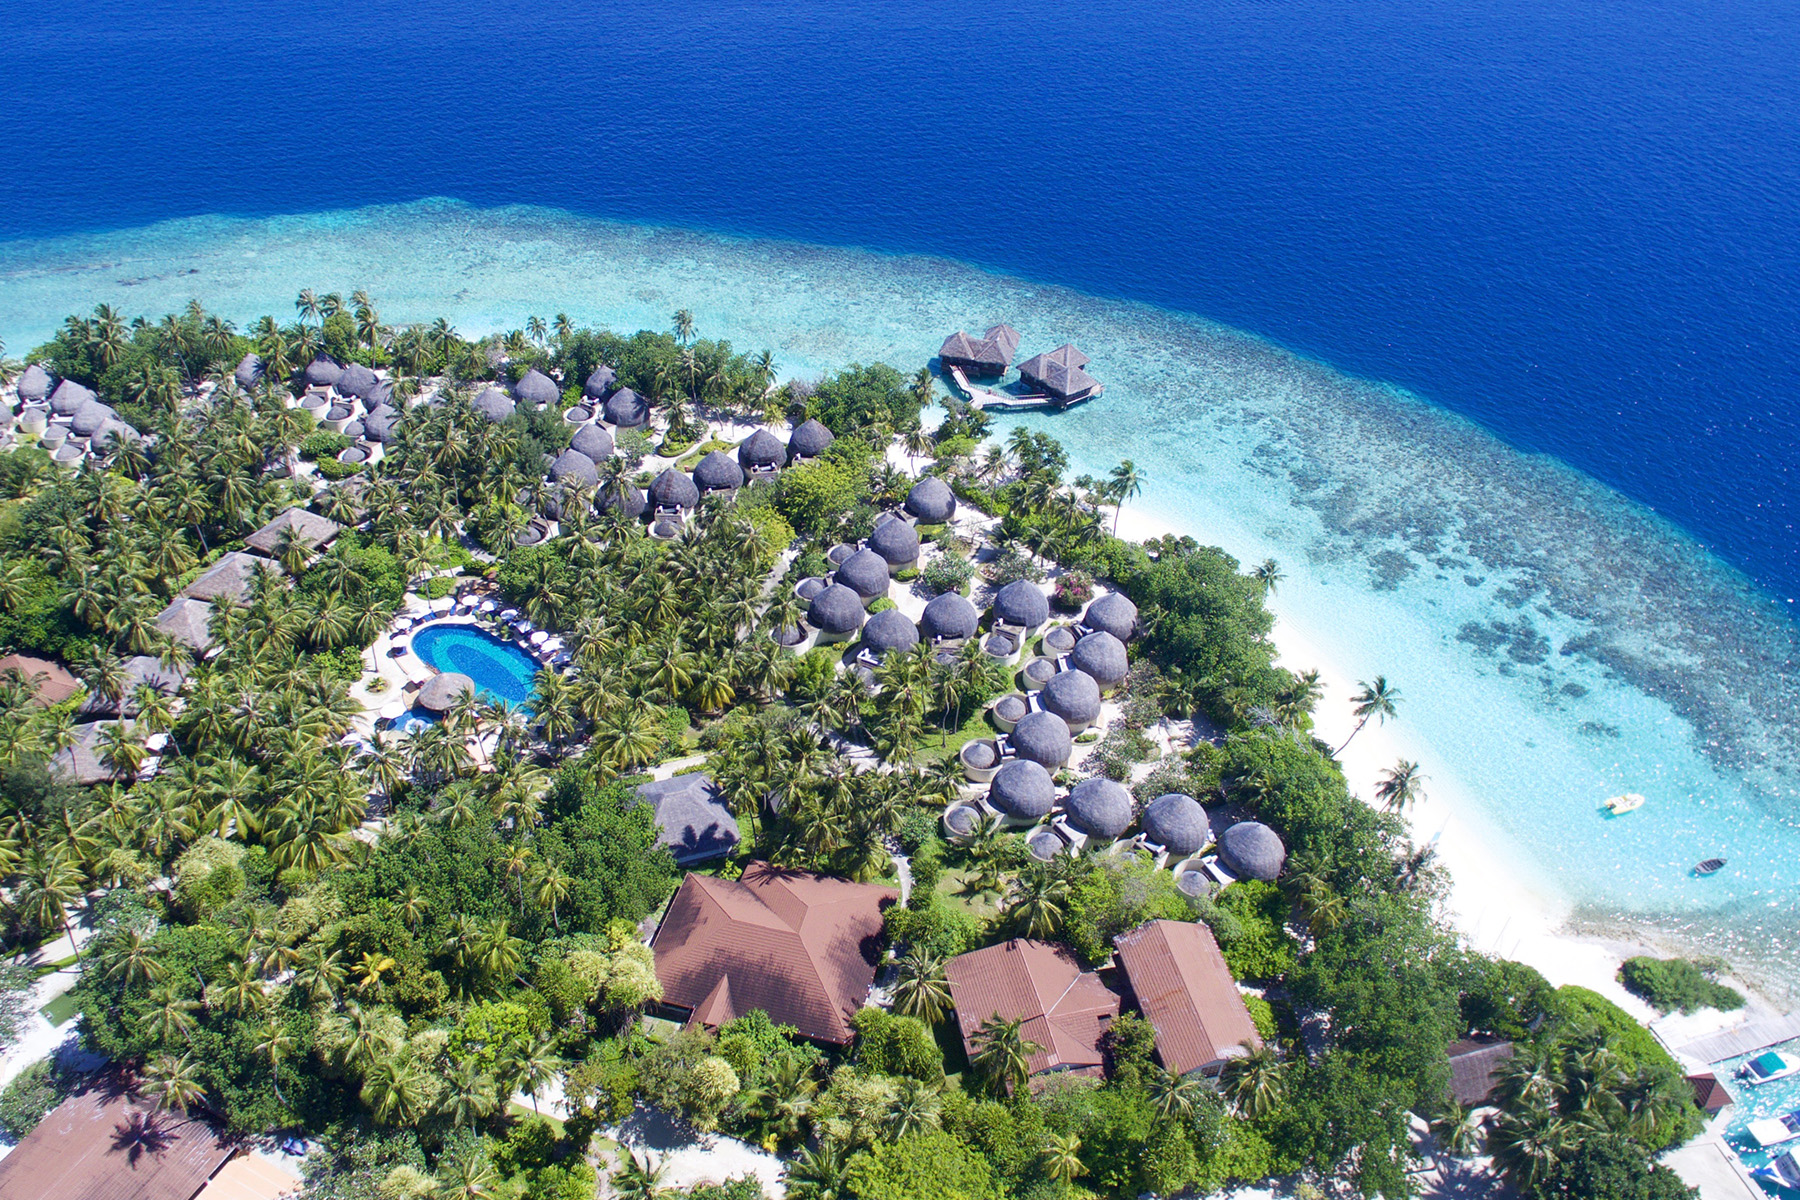 Bandos island resort. Отель Bandos Island Resort & Spa 4*. Остров Bandos Мальдивы. Bandos Maldives 4 Мальдивы. Bandos Maldives (ex. Bandos Island Resort) 4* Мальдивы,.